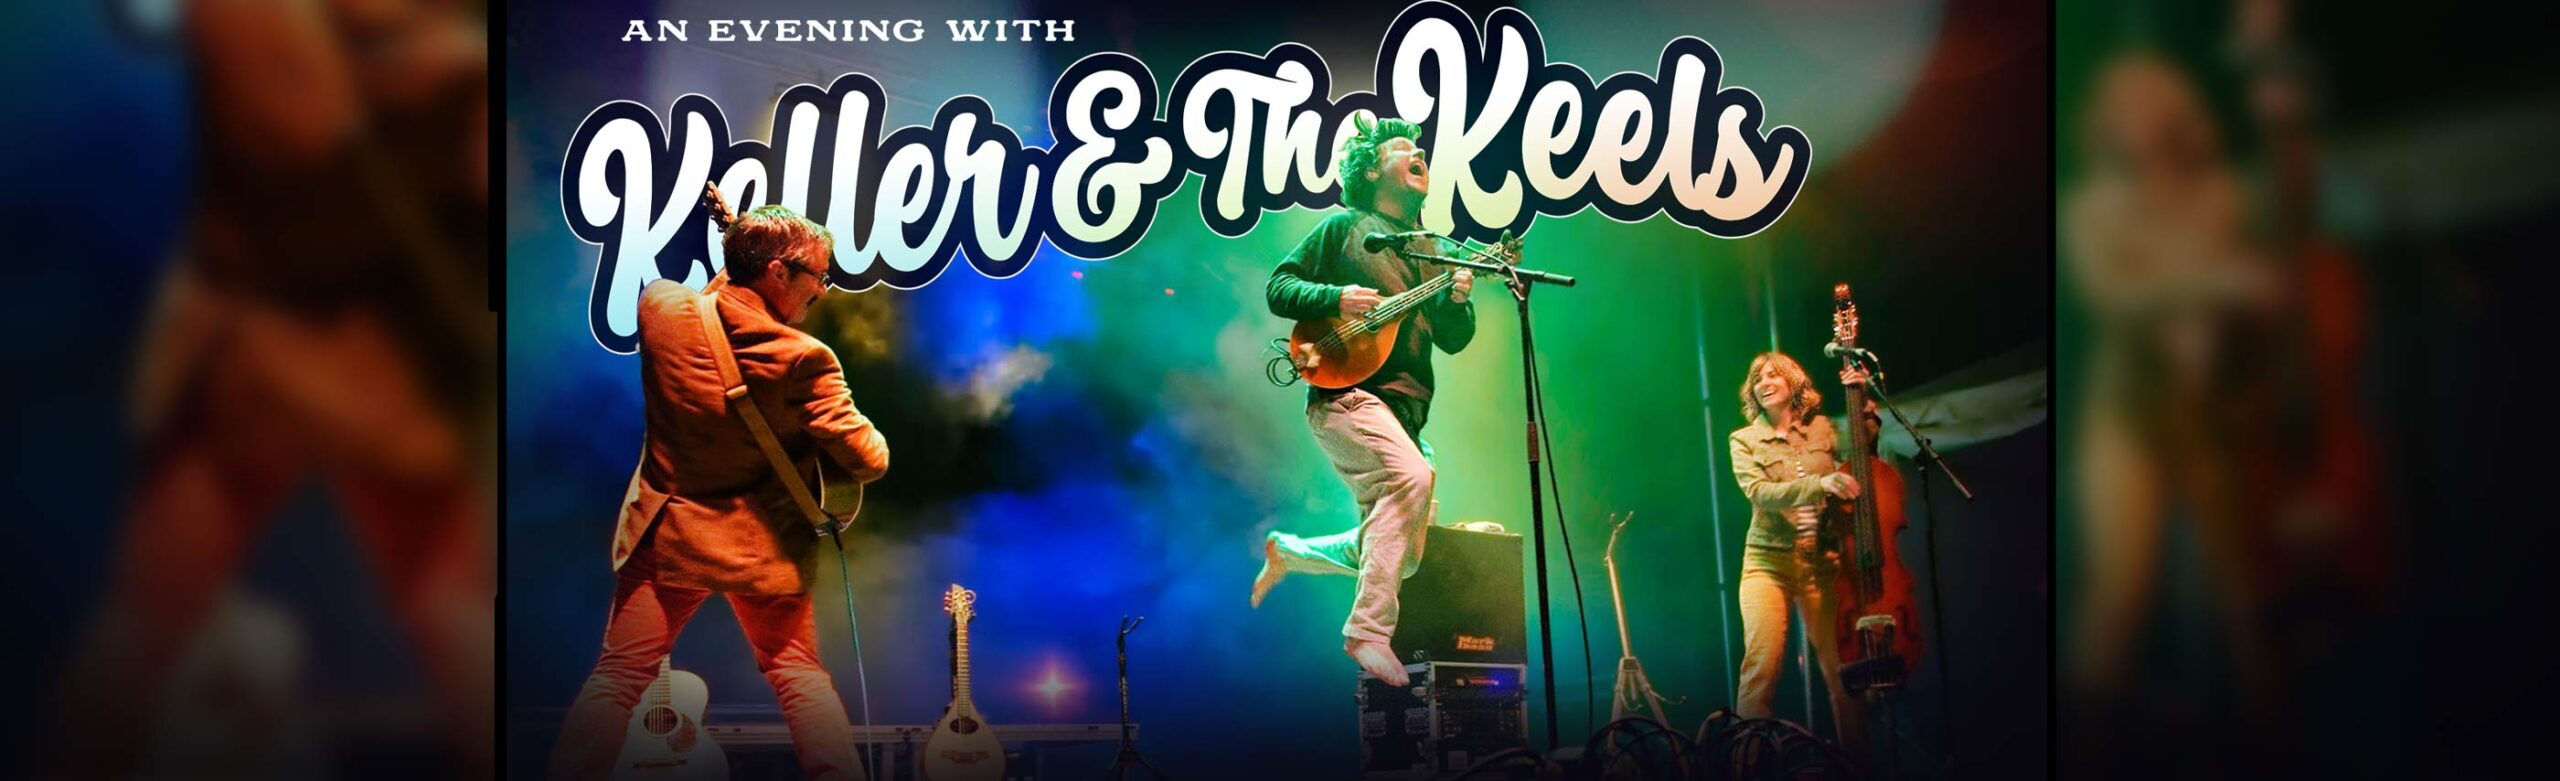 Keller & the Keels